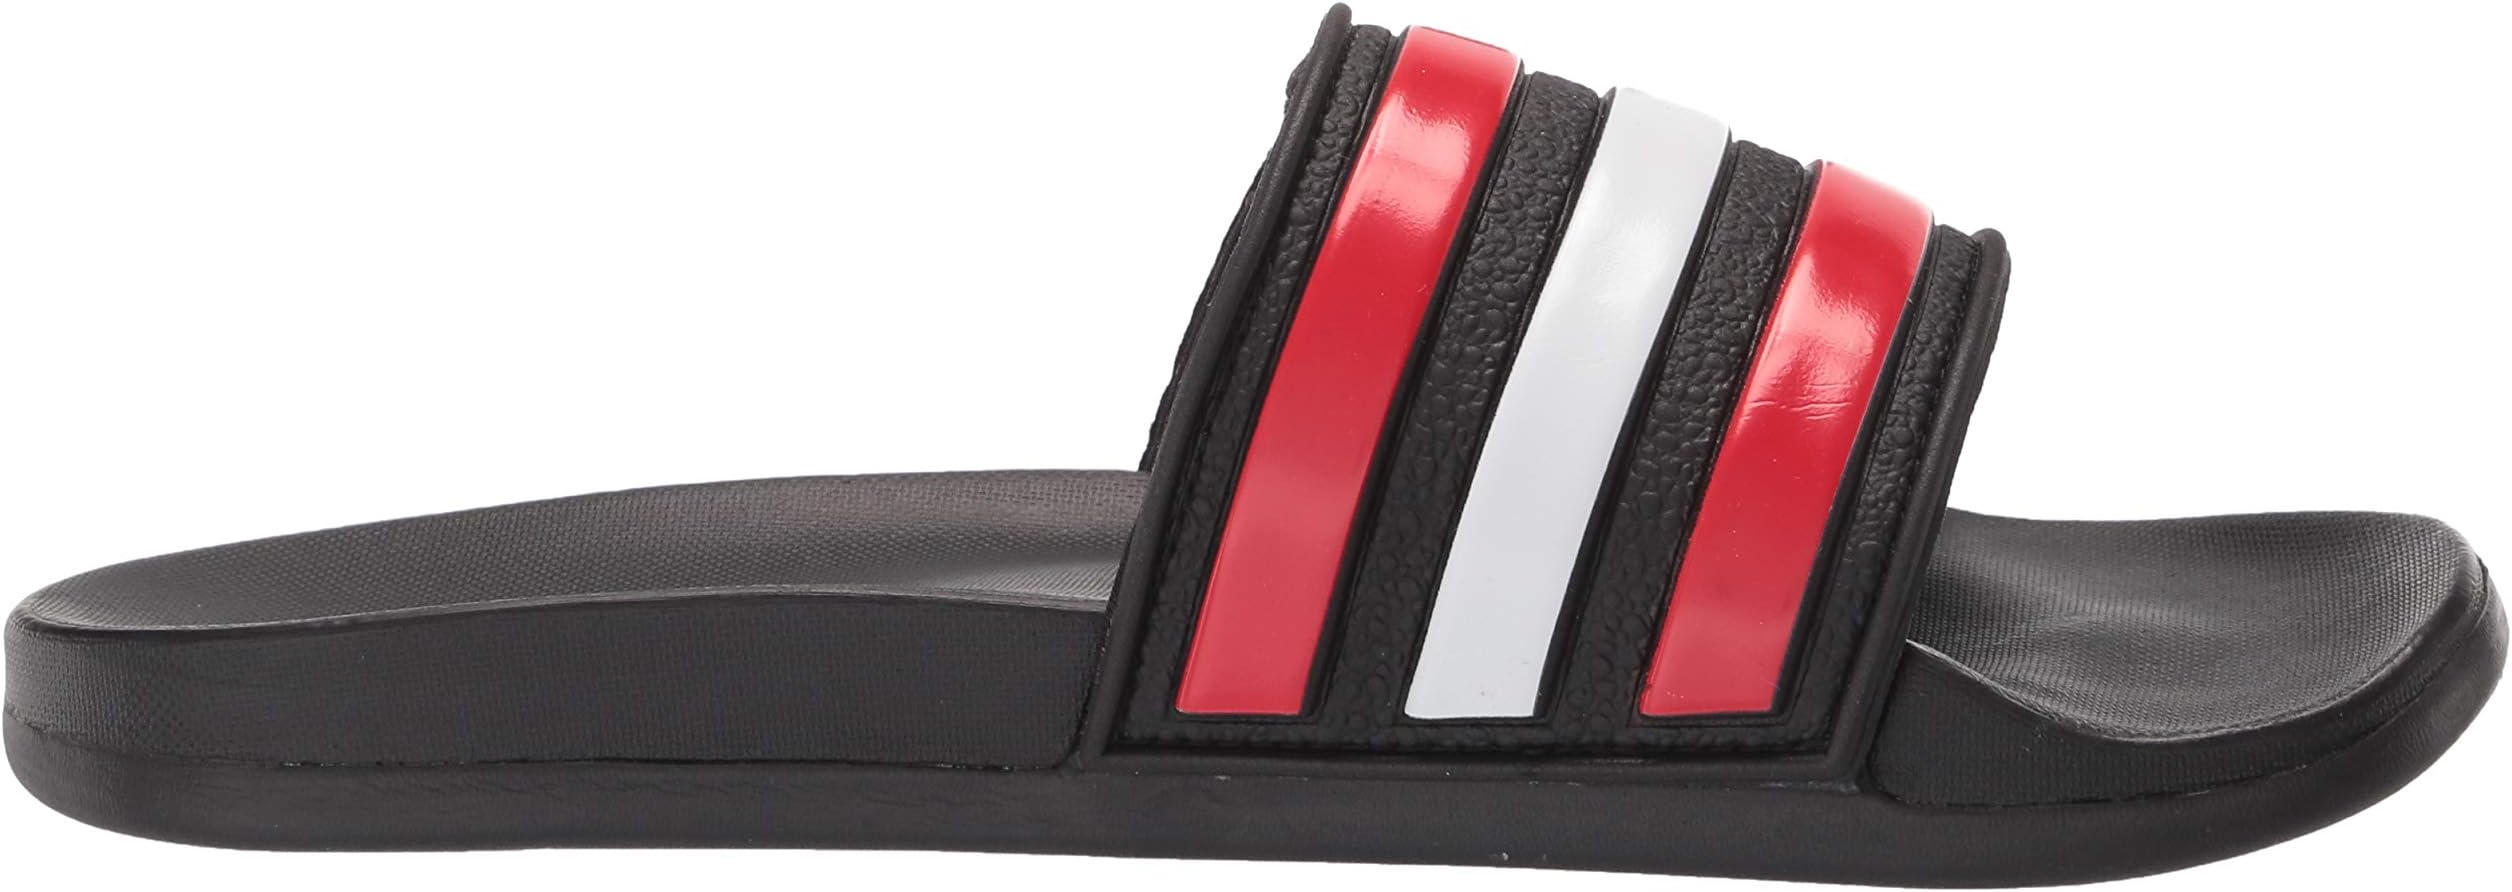 adidas Unisex Adult Adilette Comfort Adjustable Slides